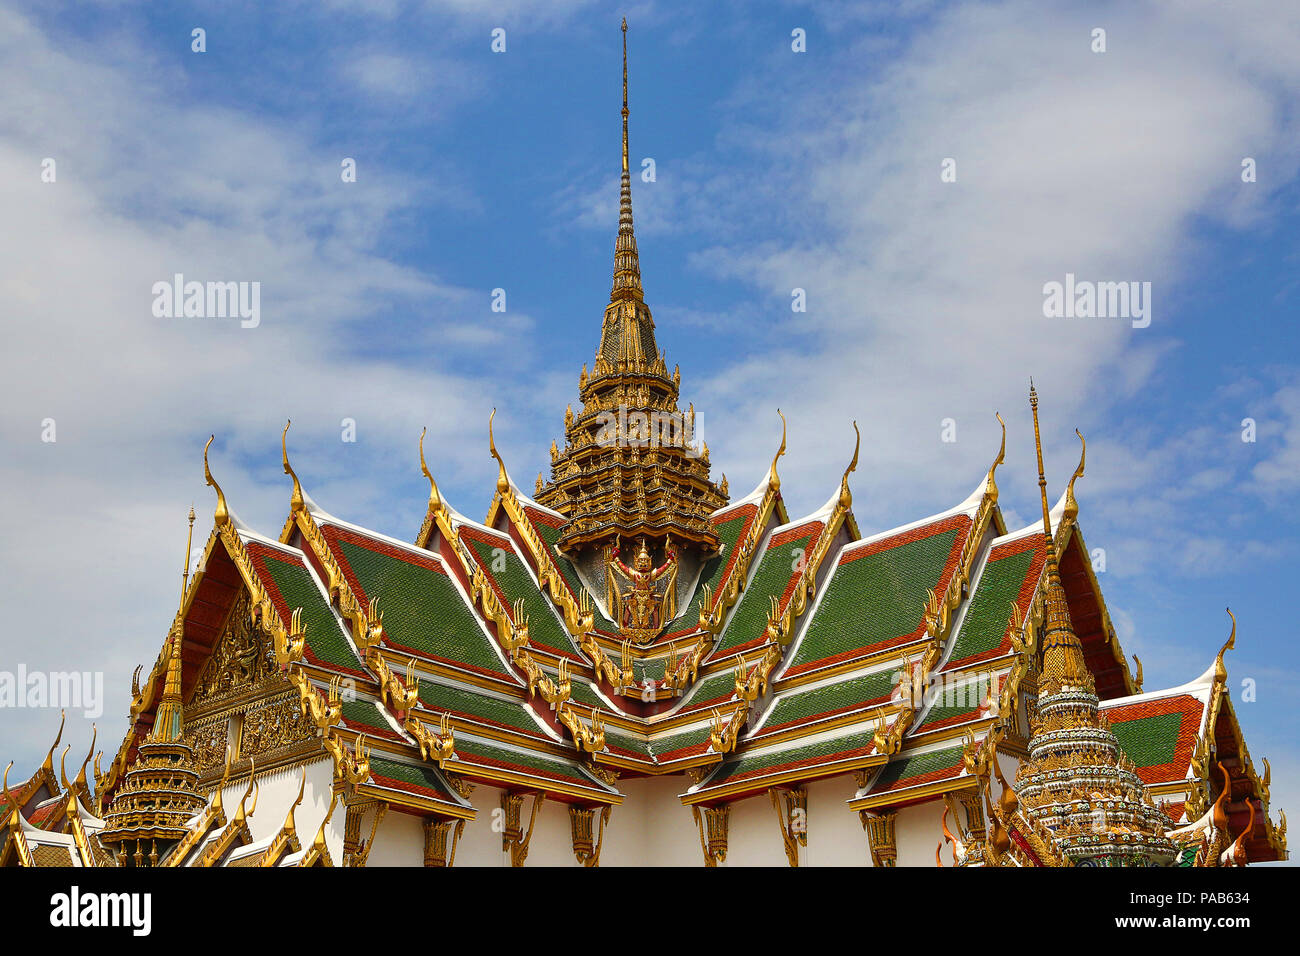 Dettagli di architettura tradizionale Thailandese al Grand Palace di Bangkok, Thailandia Foto Stock